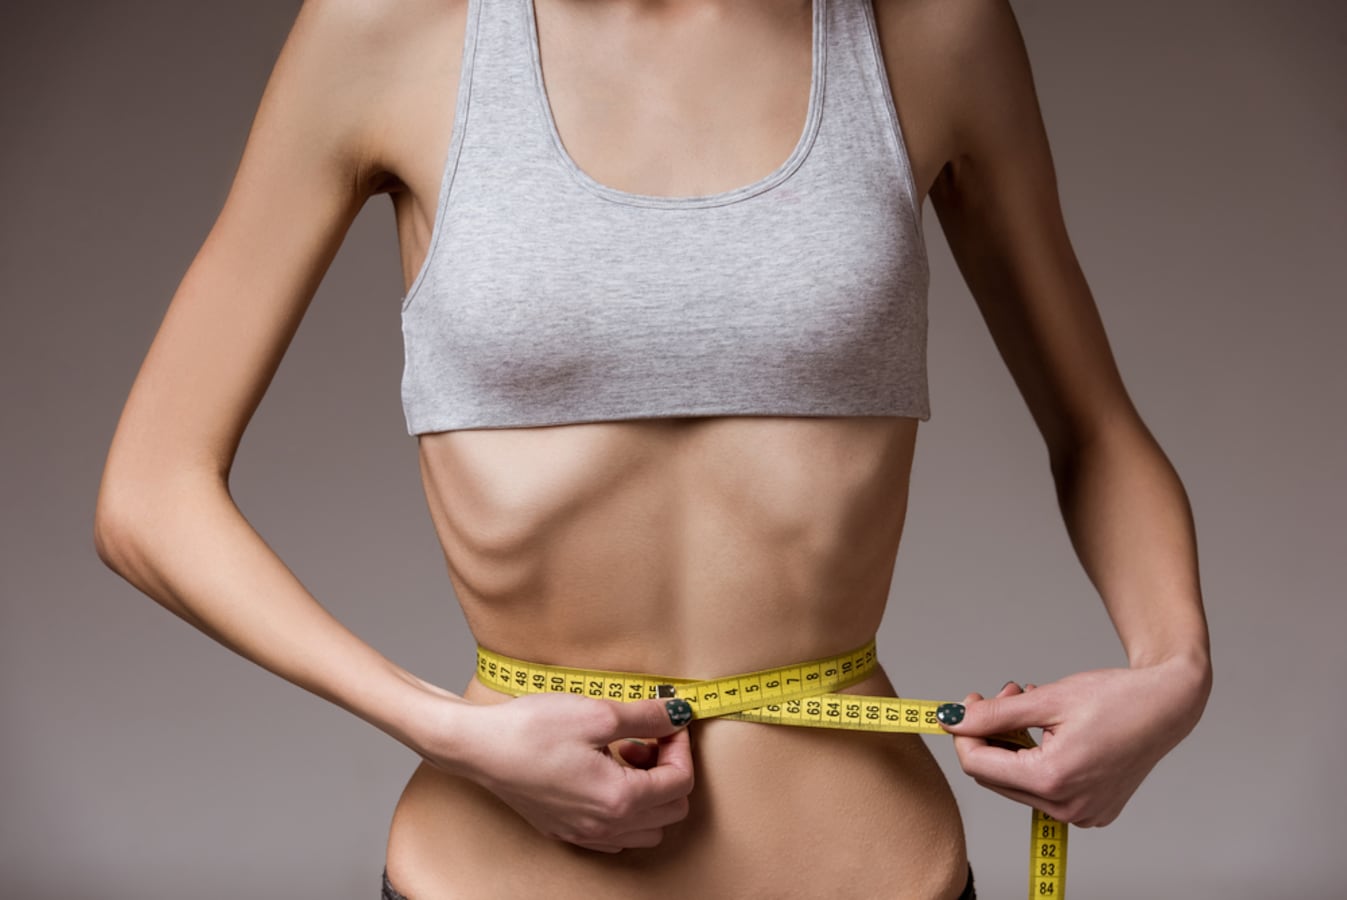 シンデレラ体重 は危険 女子高生の理想体重とダイエット基本情報 ダイエットの基本 All About